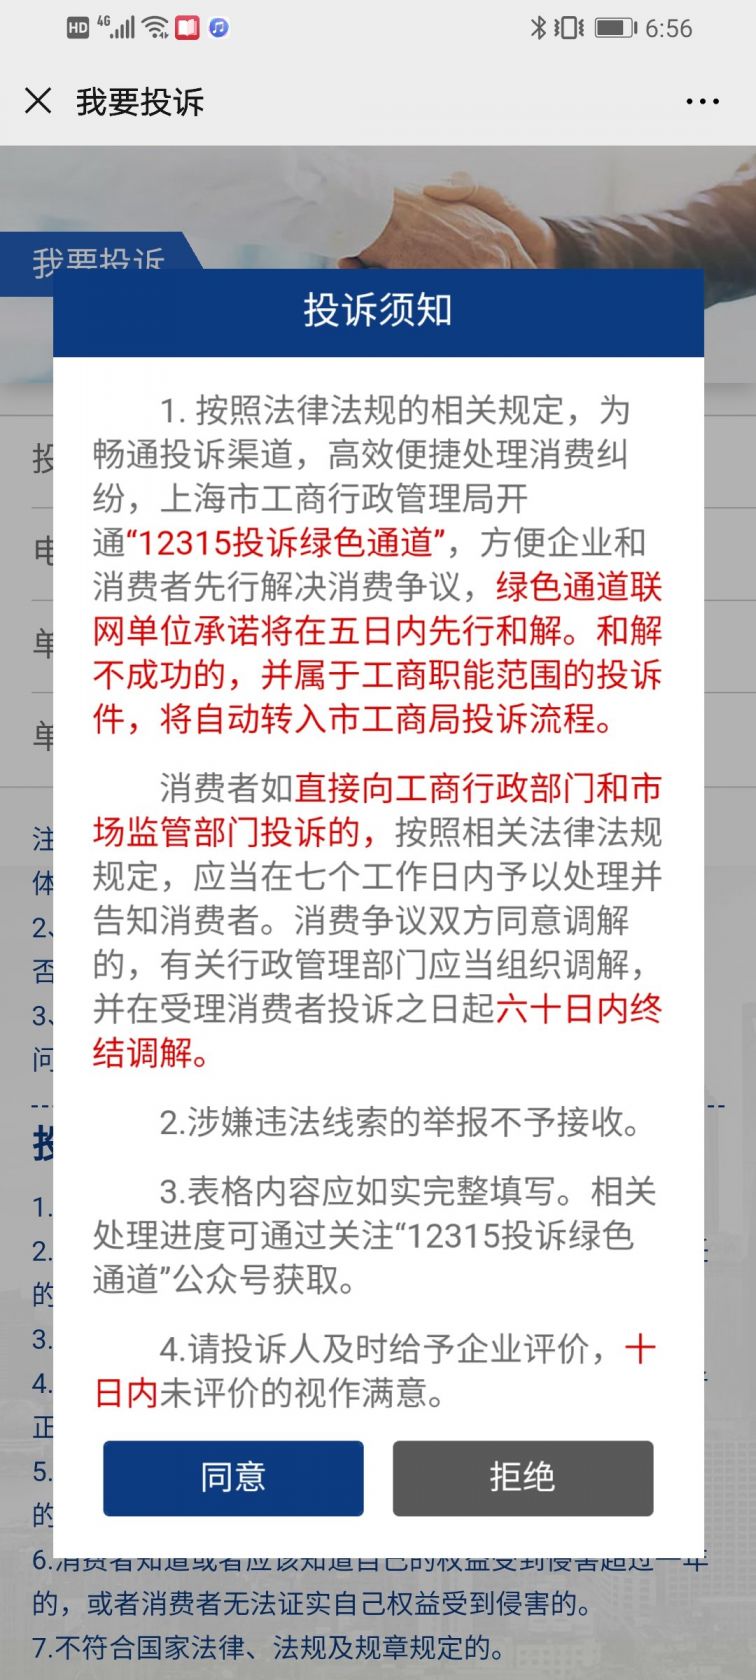 上海12315消费者投诉流程